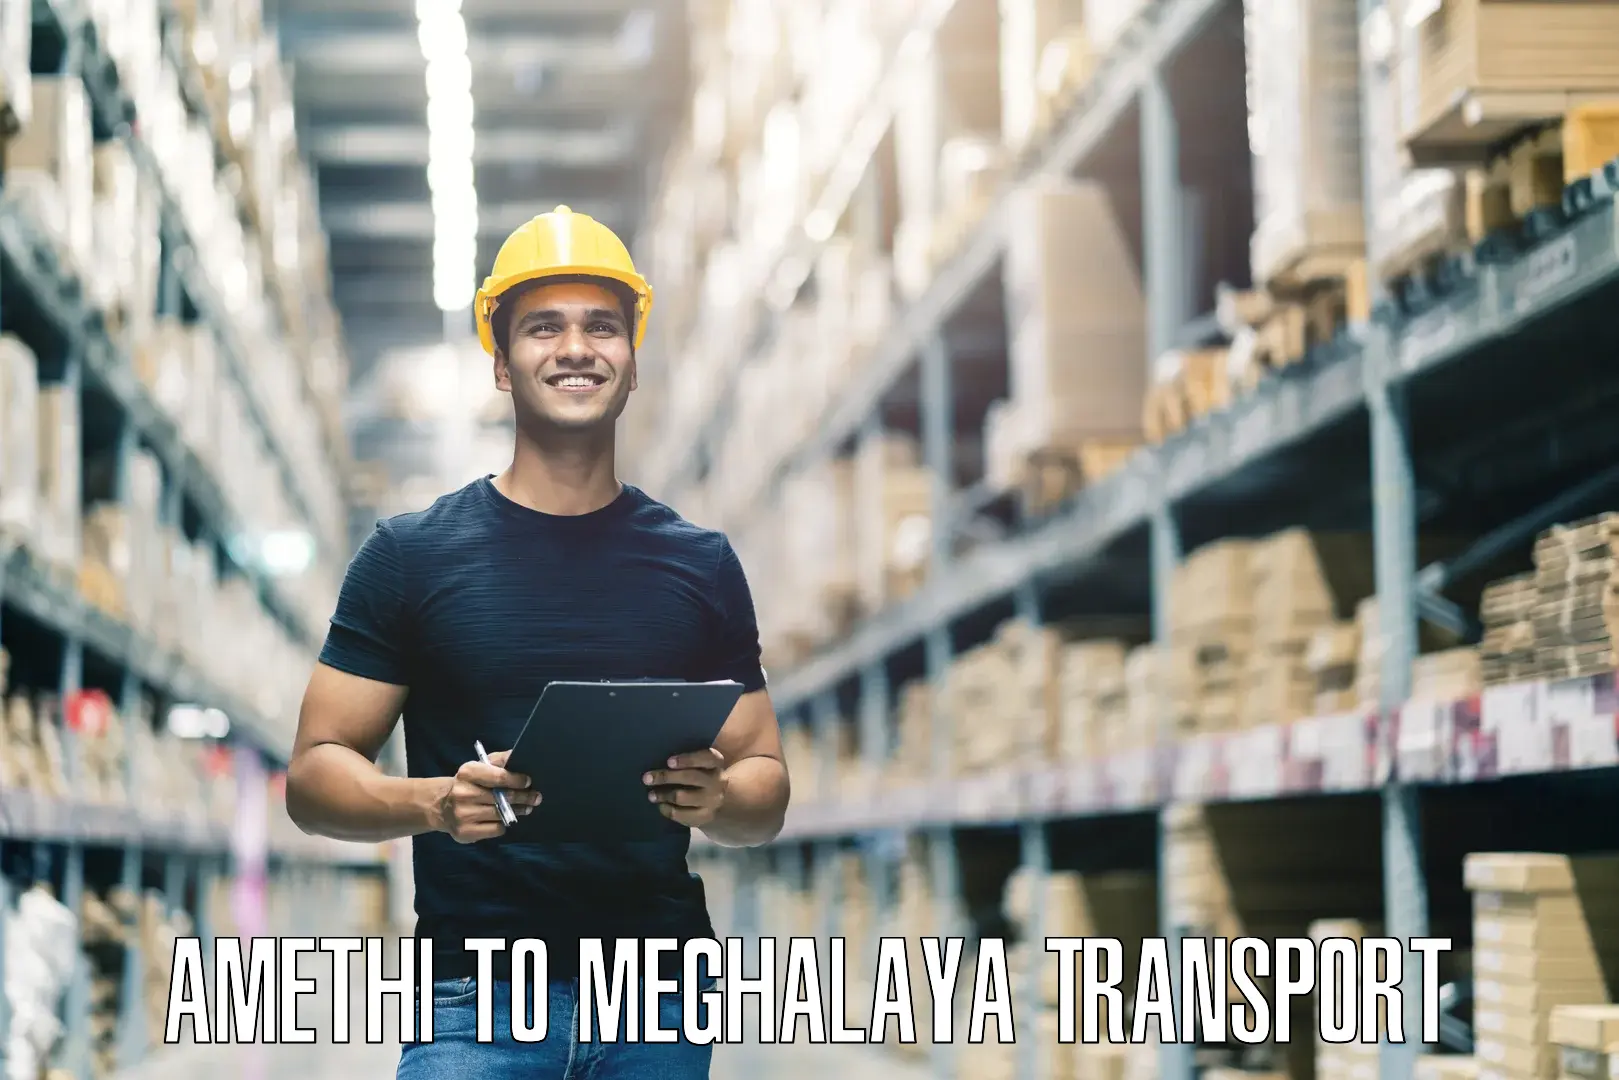 Furniture transport service Amethi to Meghalaya